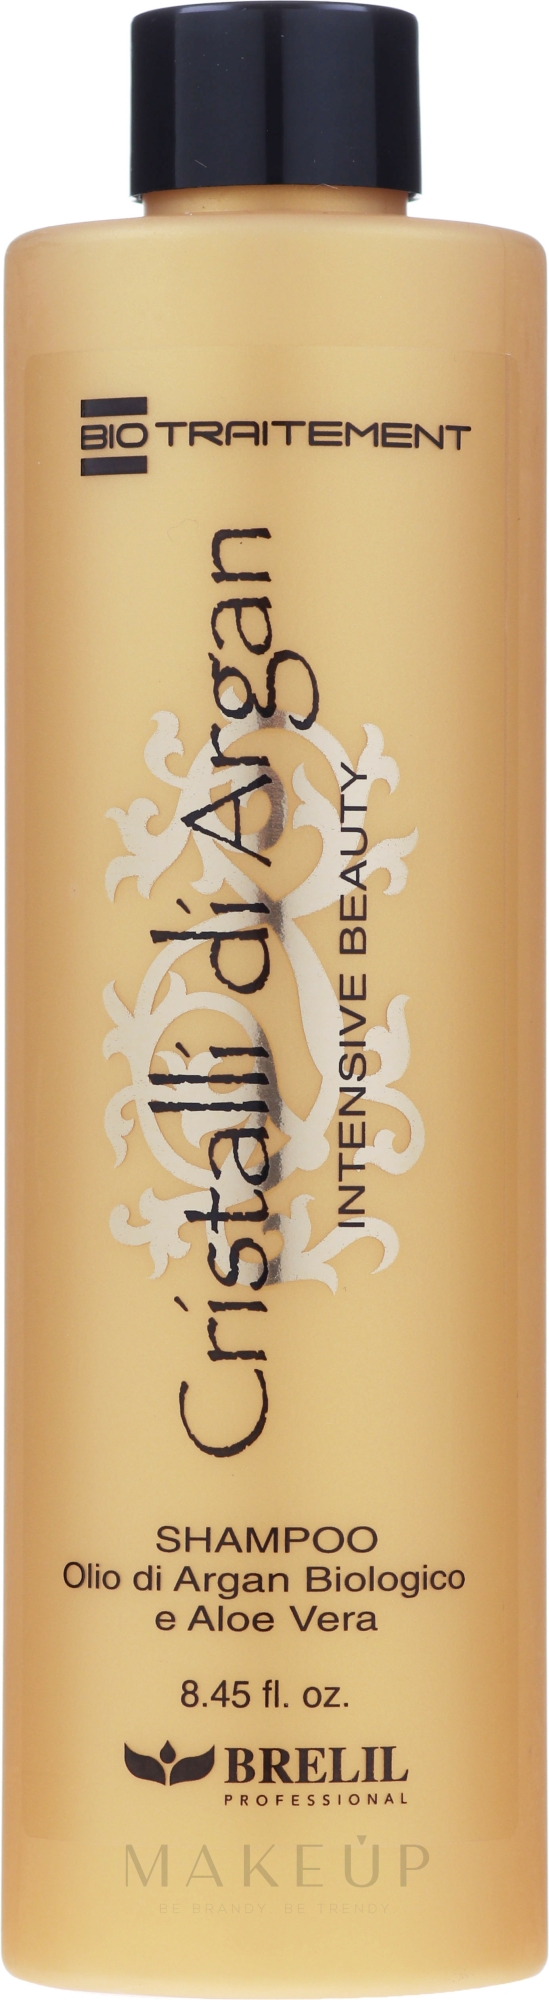 Feuchtigkeitsspendendes Shampoo mit Arganöl und Aloe Vera - Brelil Bio Traitement Cristalli d'Argan Shampoo Intensive Beauty — Bild 250 ml